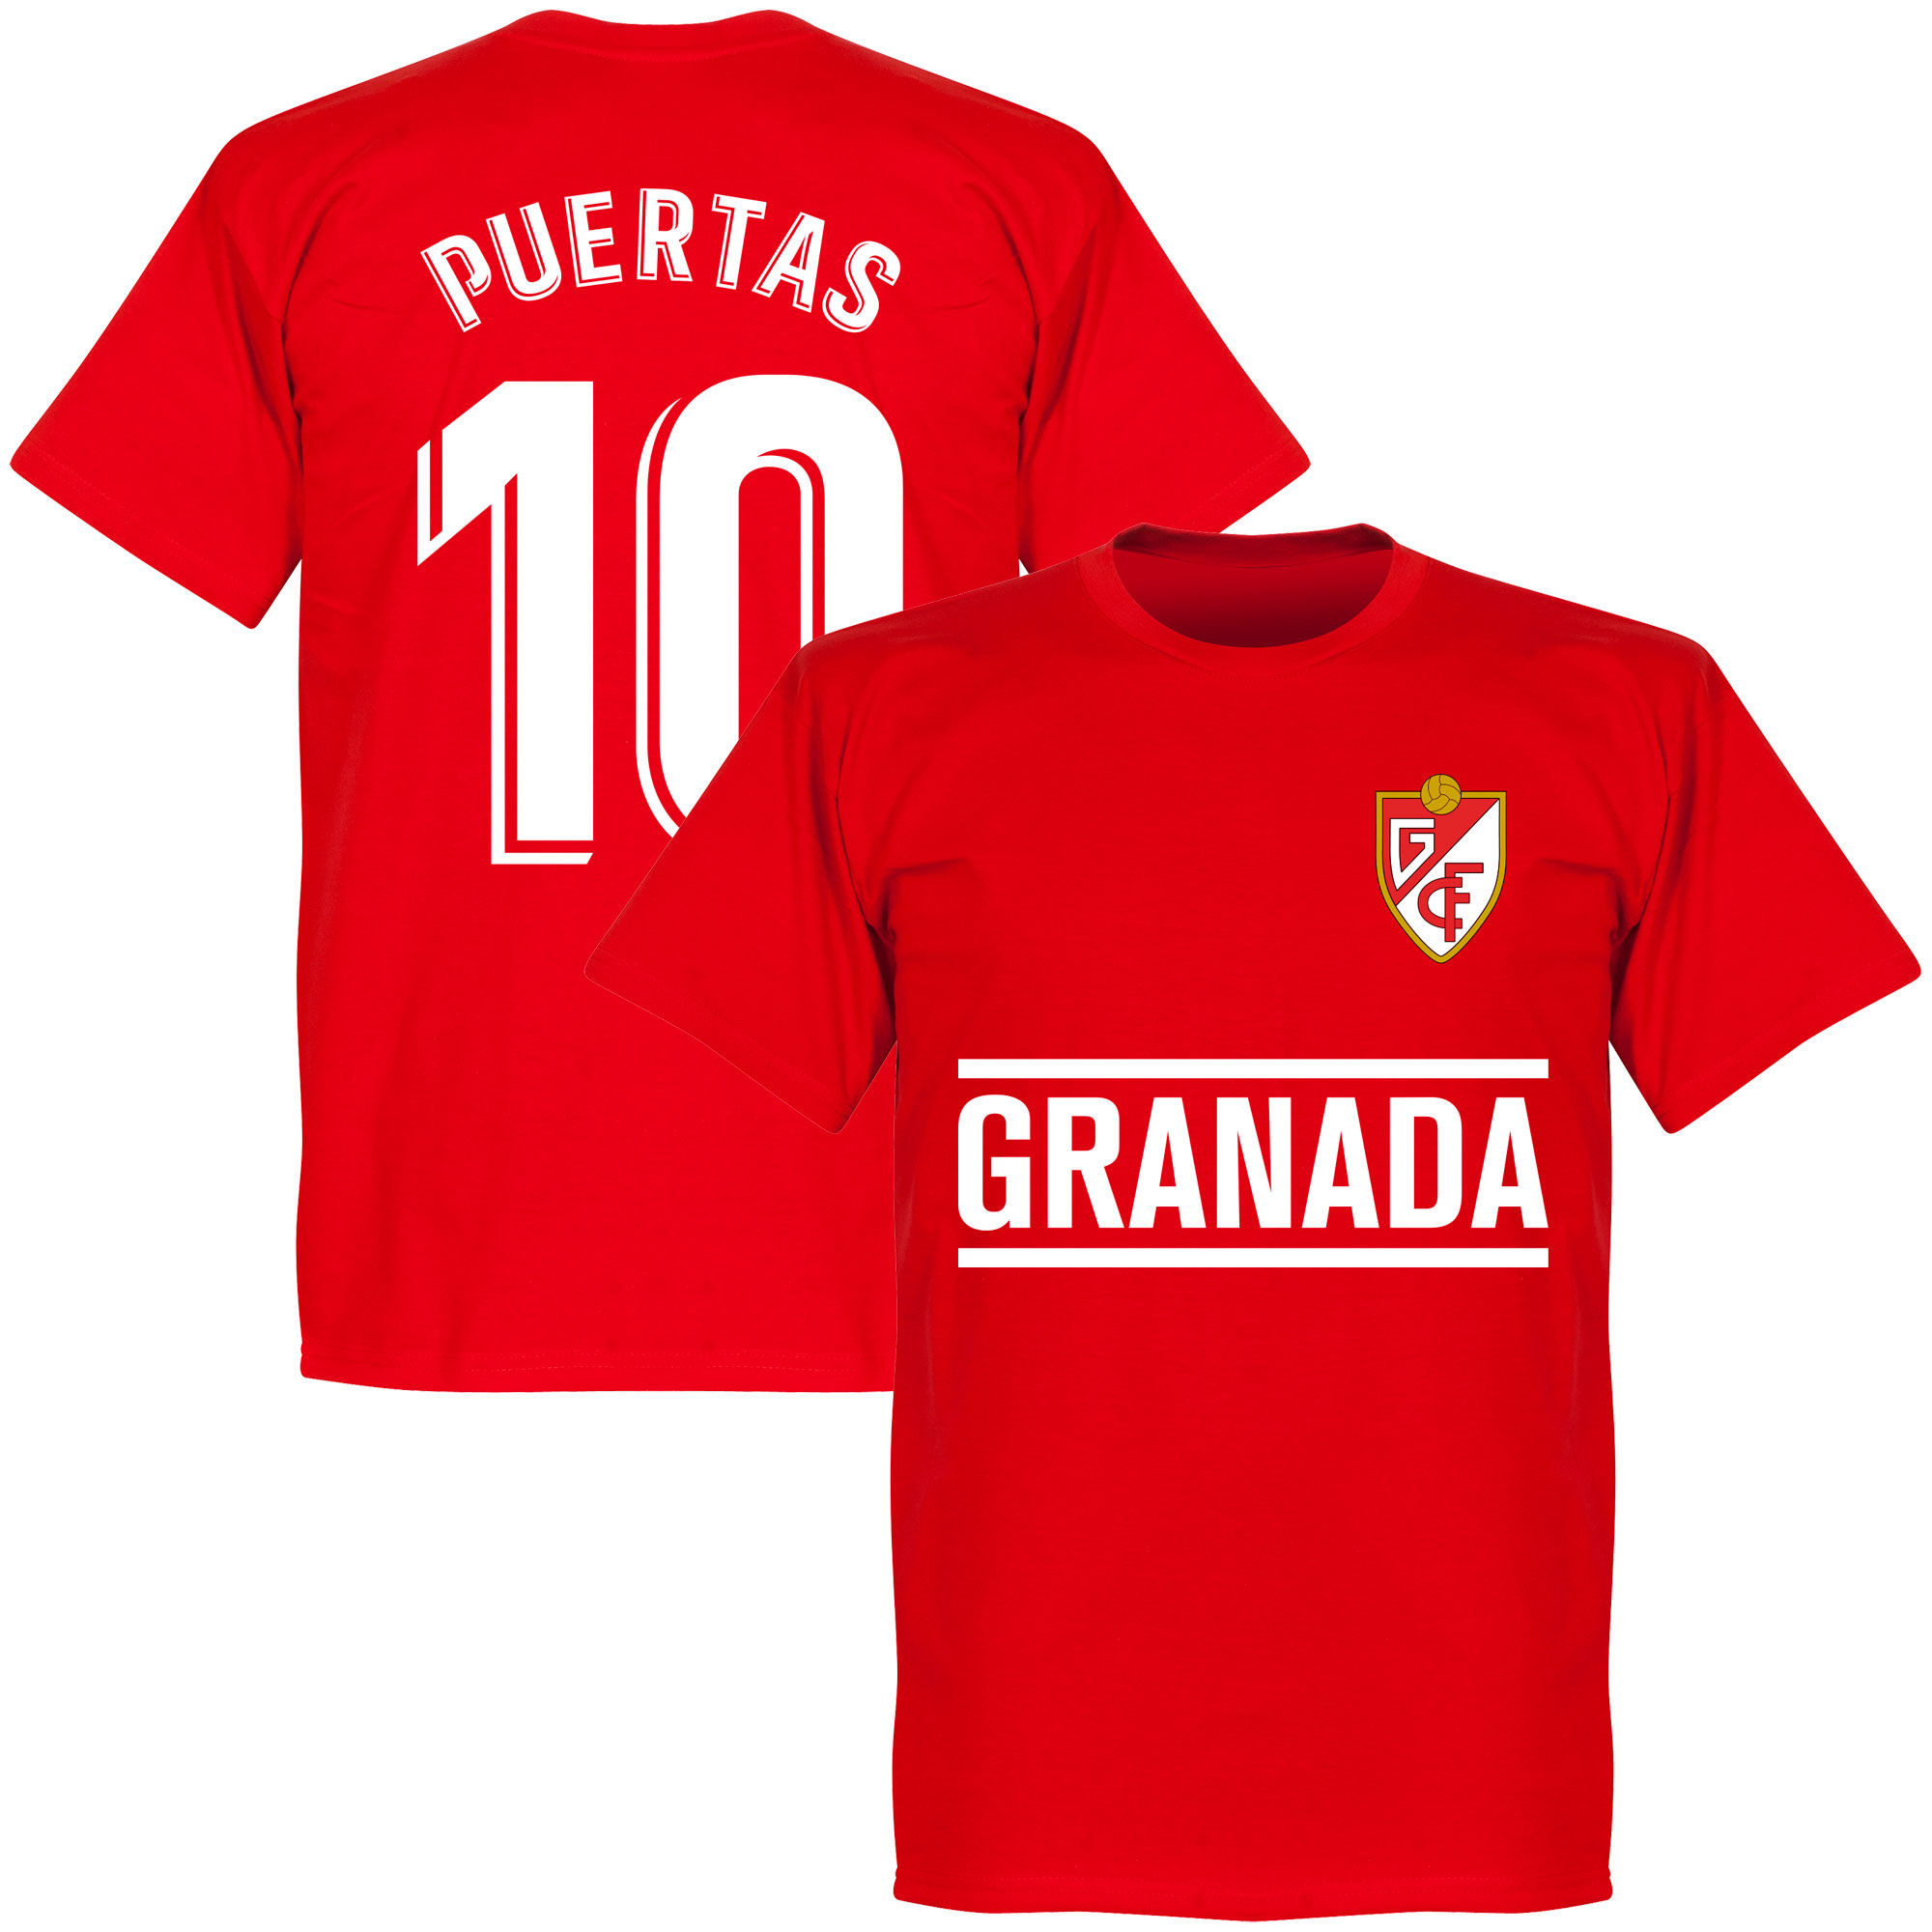 Granada CF - Tričko - červené, číslo 10, Antonio Puertas